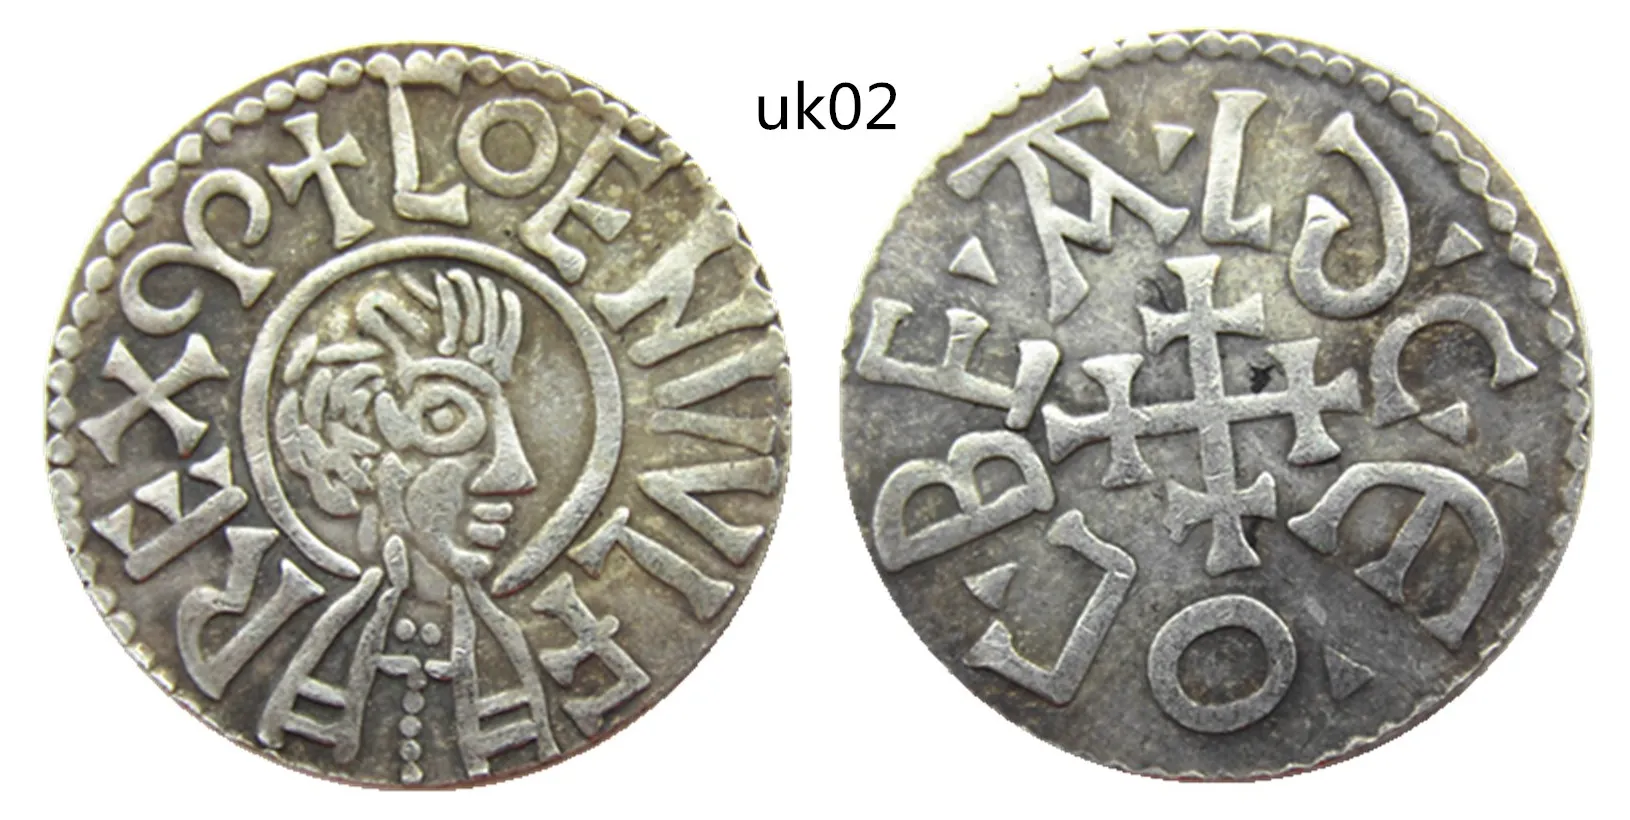 UK(01)-uk03Vereinigtes Königreich 839-859 König Aethelwulf von Wesex 1Penny Craft Herstellung versilberter Kopienmünzen aus Metall